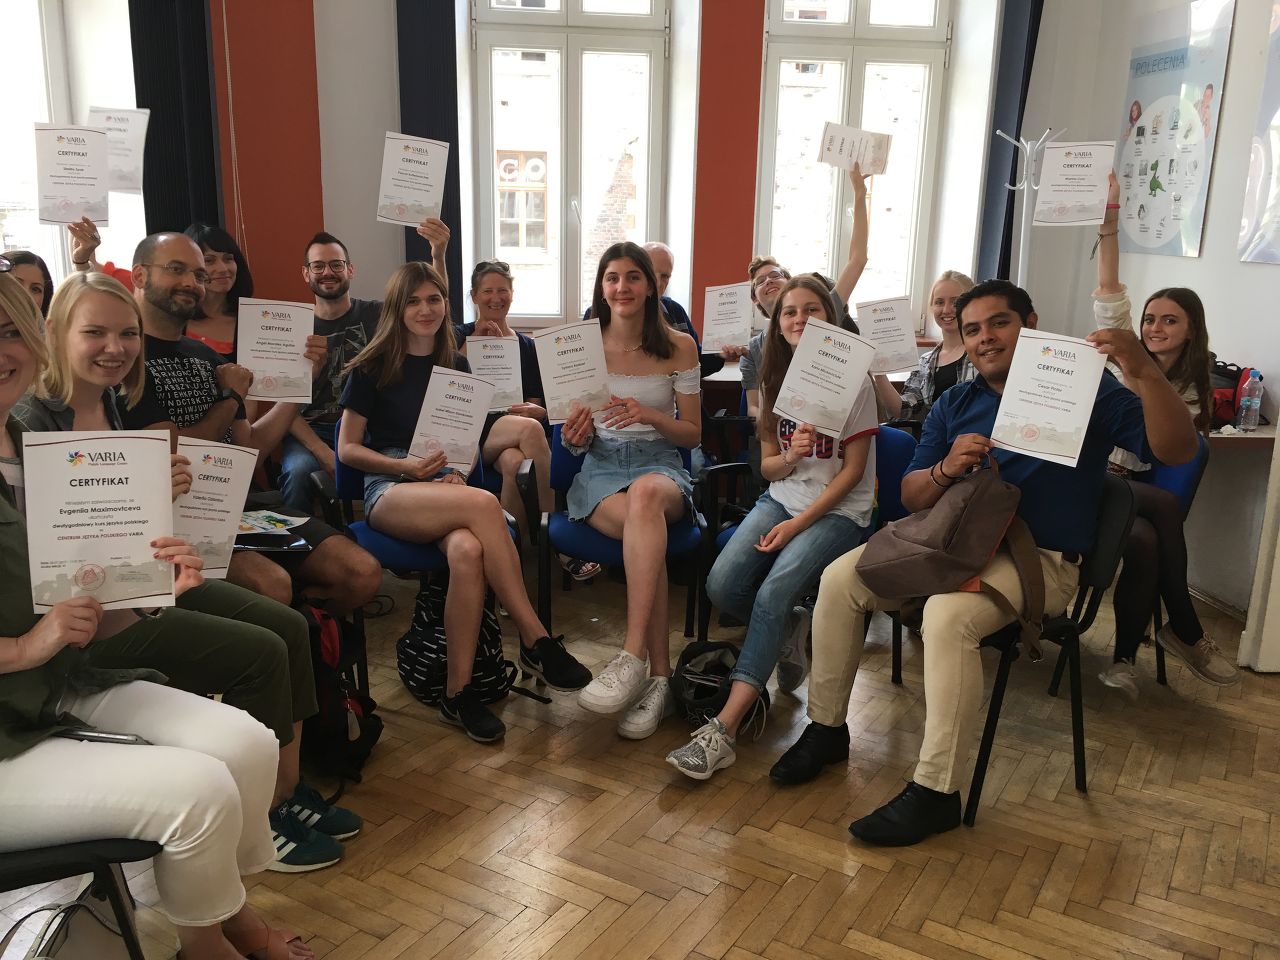 3-week intensive Polish language course at Varia